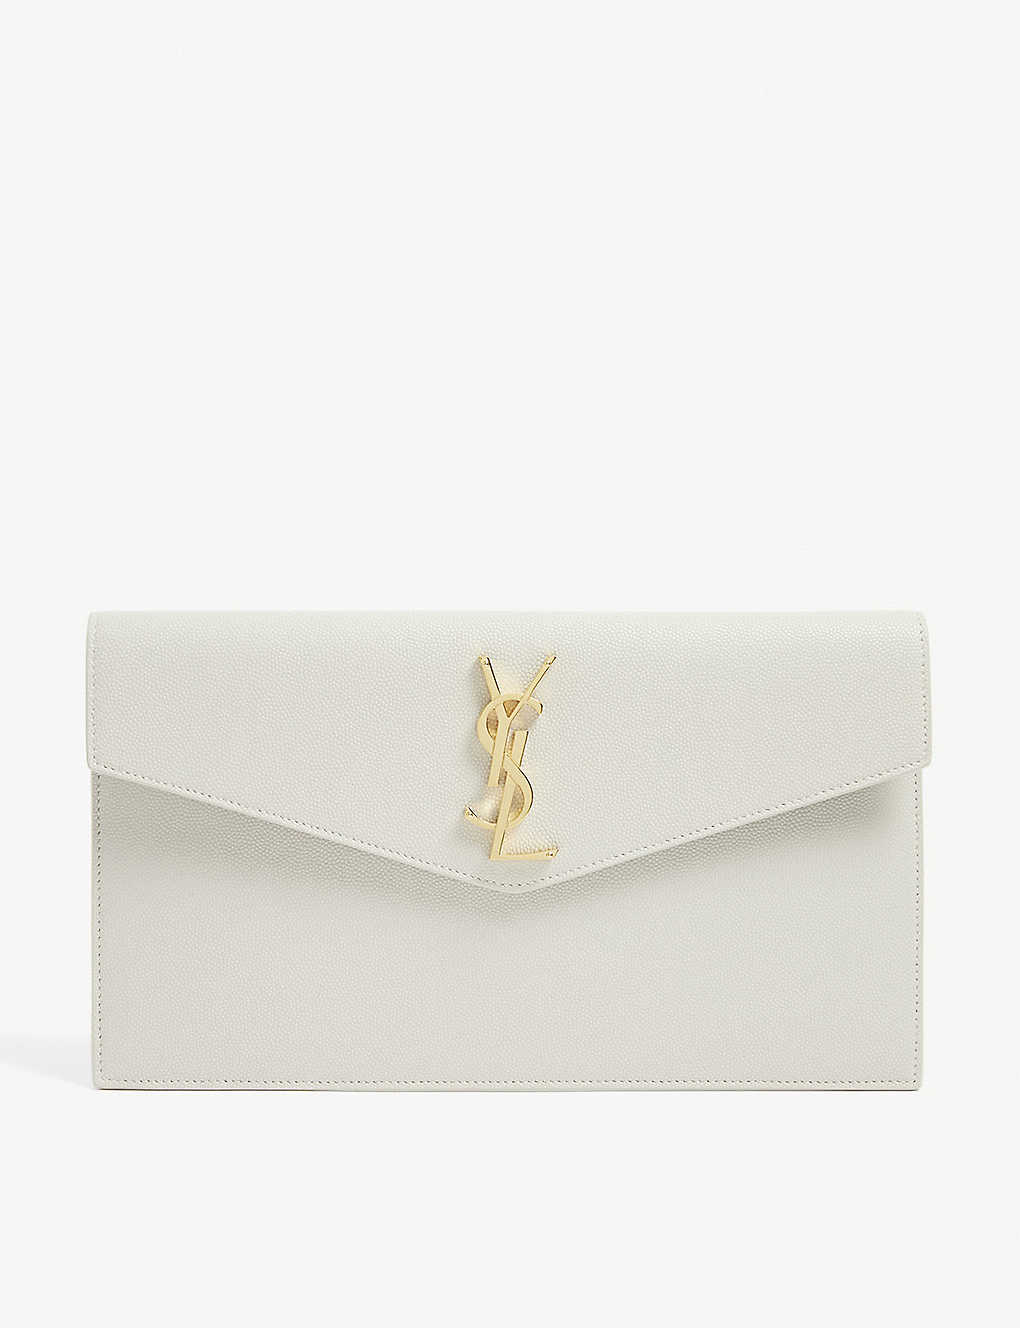 SAINT LAURENT - Uptown grained leather envelope pouch | Selfridges.com